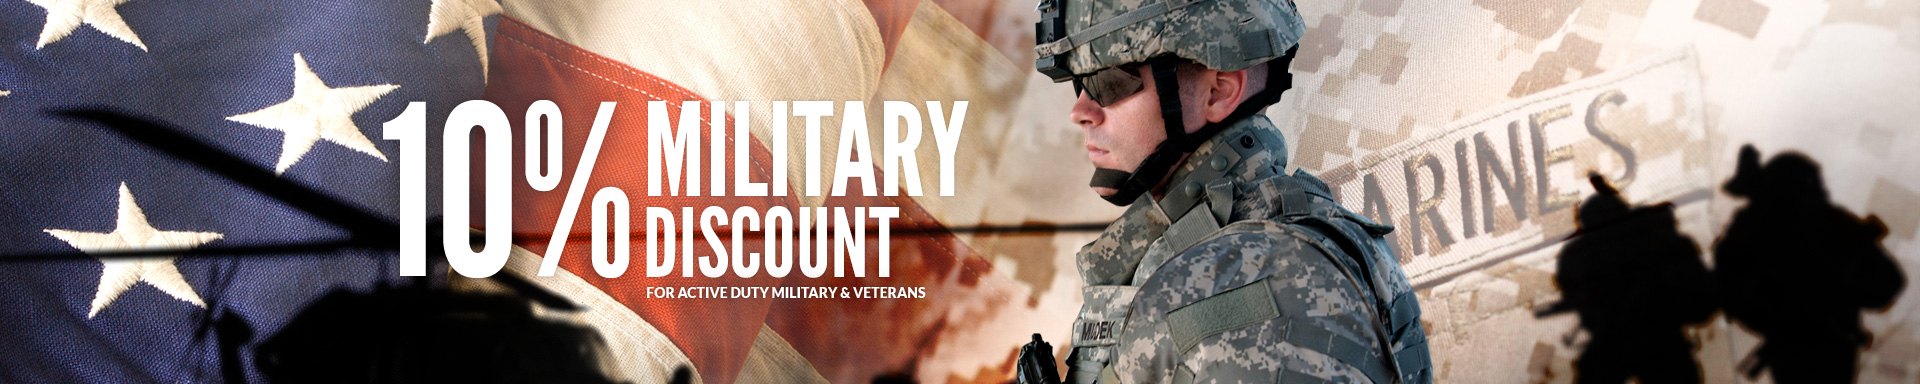 Lids.com Discounts for Military, Nurses, & More